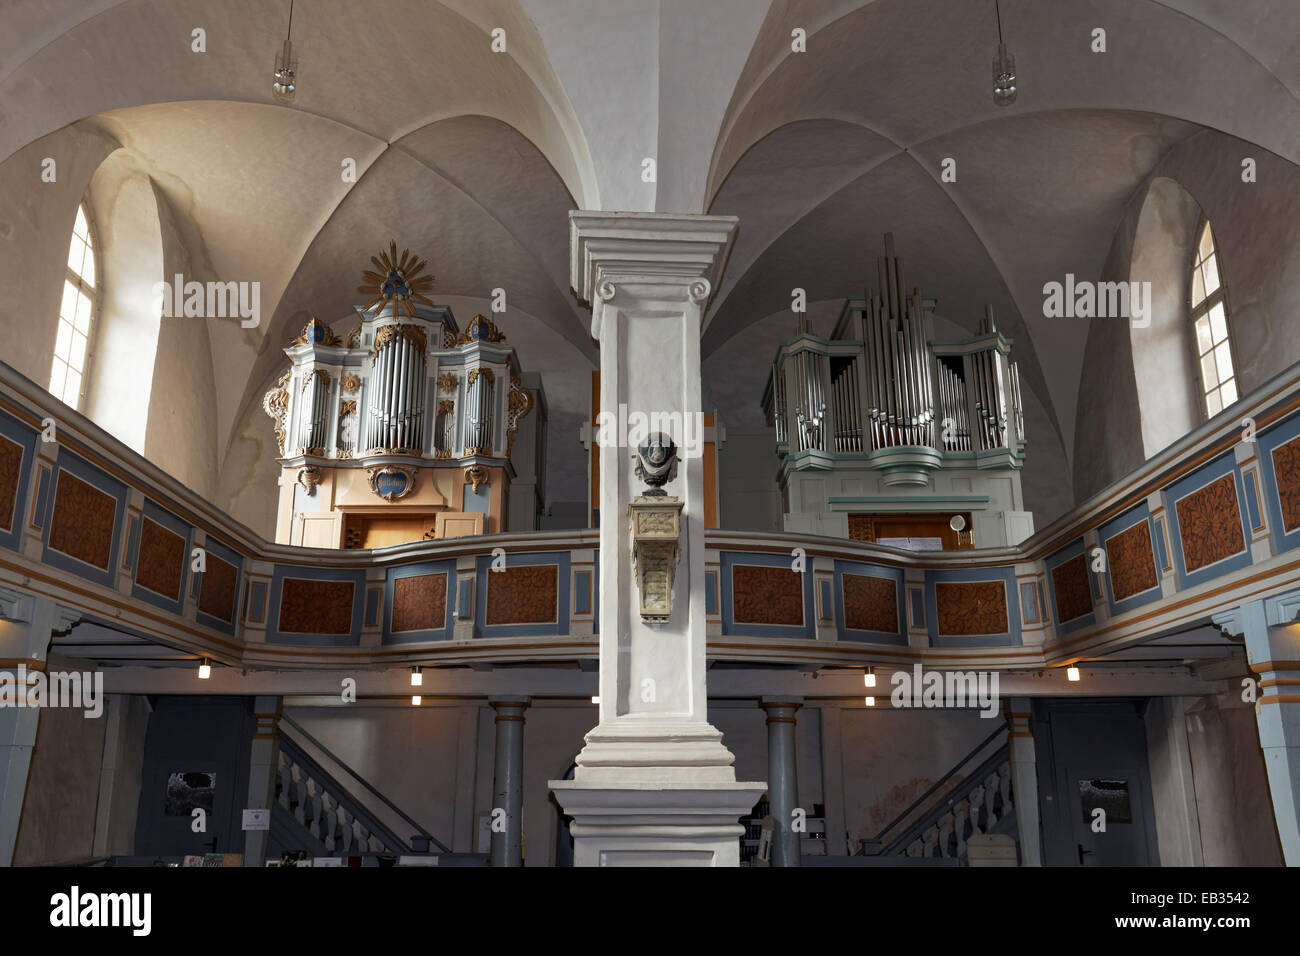 Doppel-Orgel in der St.-Laurentius-Kirche, Rheinsberg, Ostprignitz-Ruppin, Brandenburg, Deutschland Stockfoto